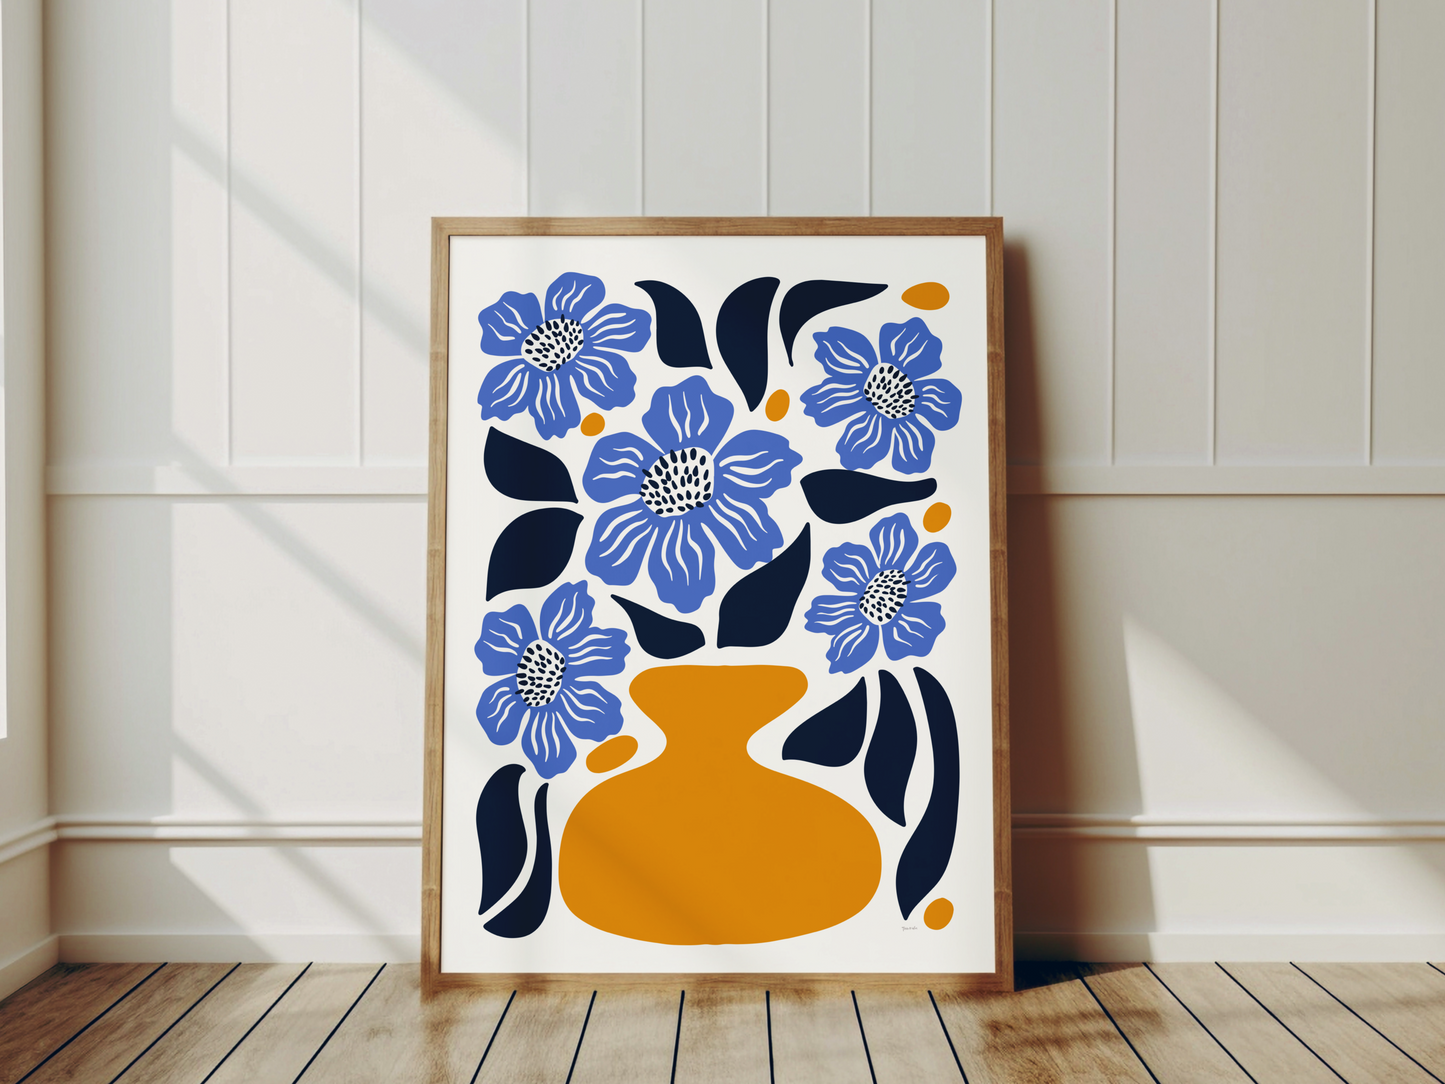 färgstark blå botanisk posterprint med vallmo i gul vas, ram i trä lutande mot vit vägg